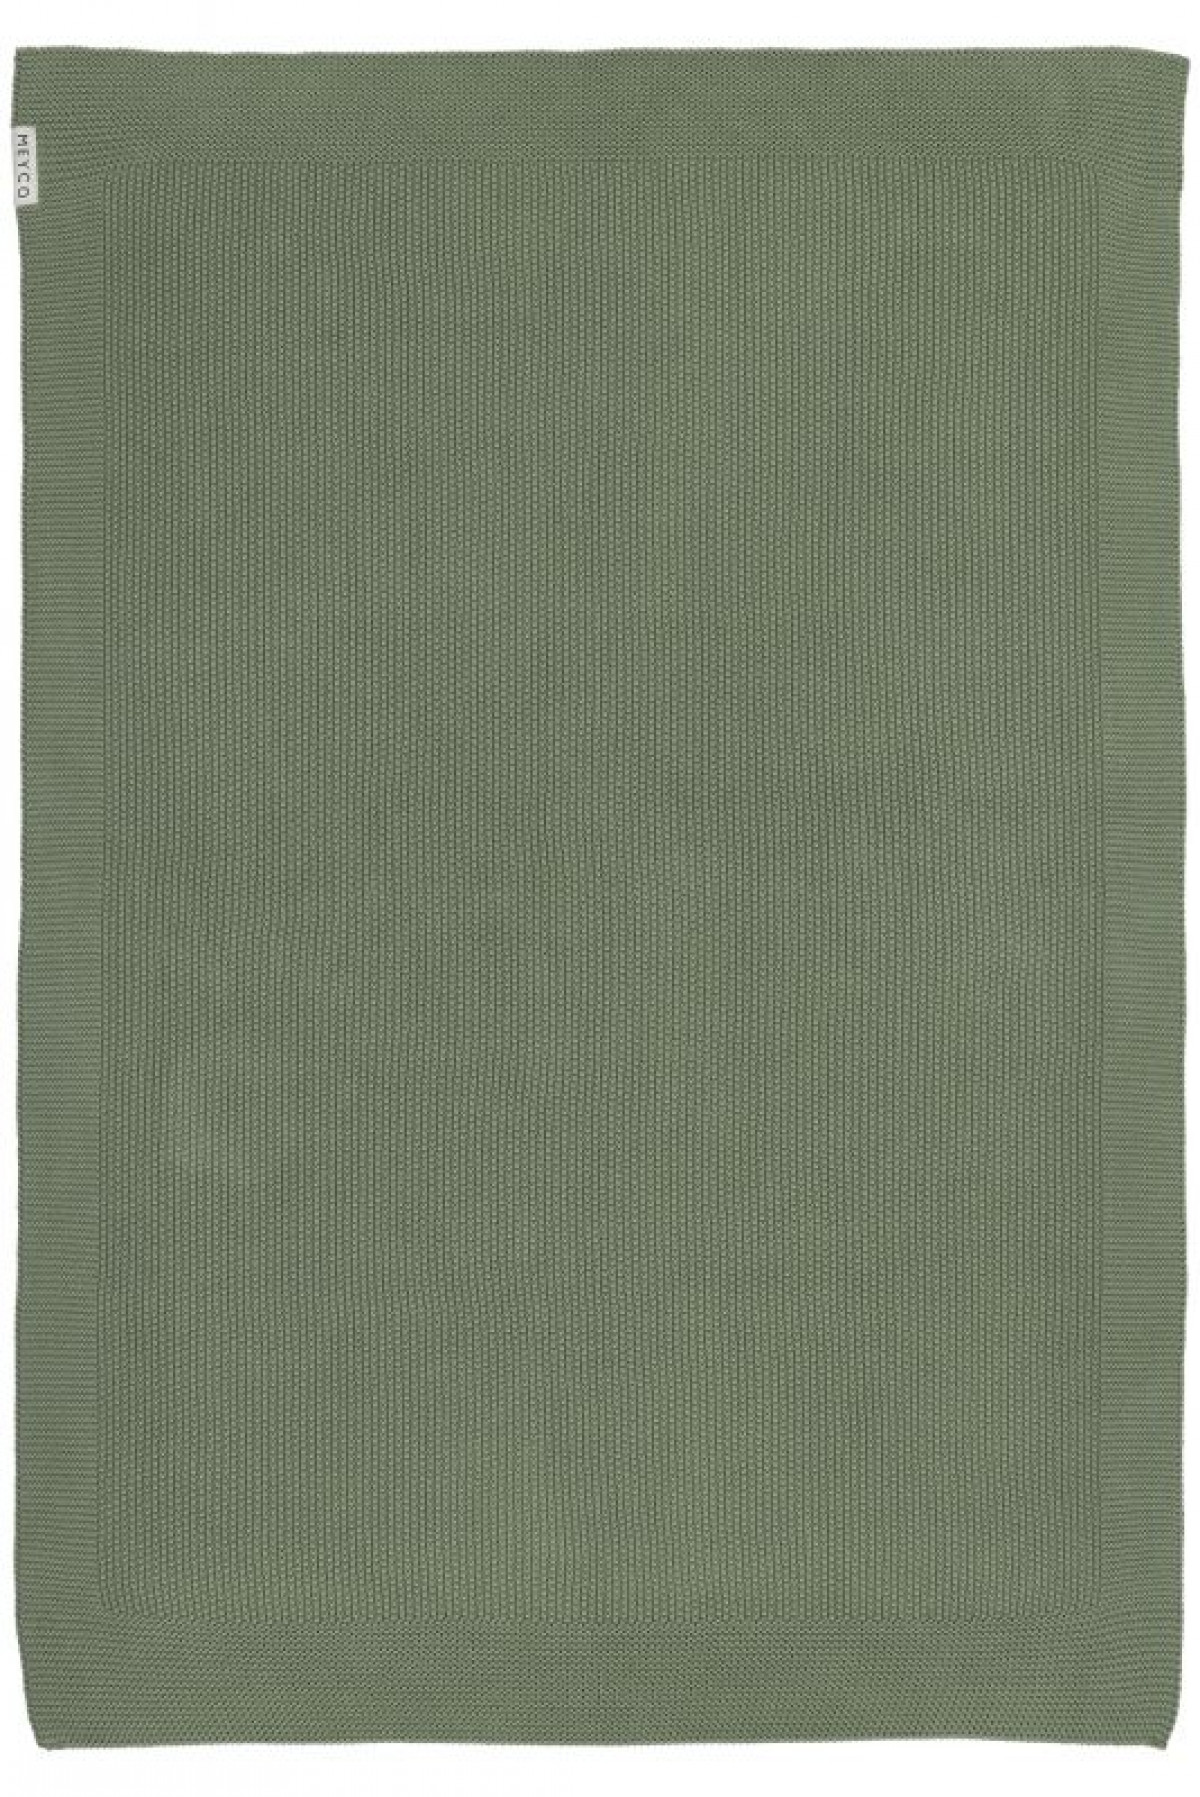 Grande couverture coton bio 100*150cm - Vert forêt - 2753232 - photo 8